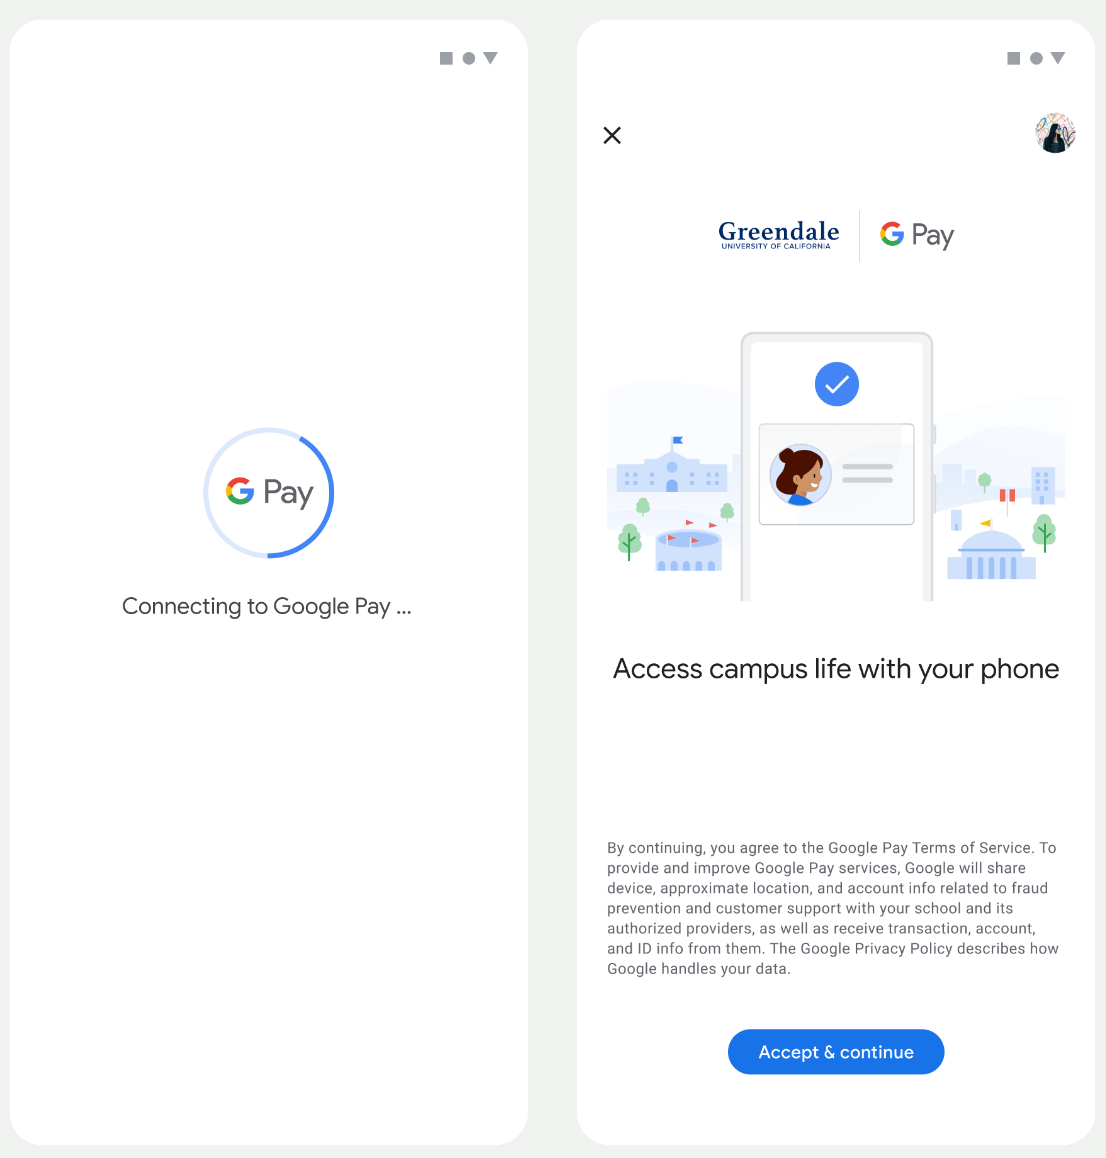 첫 번째 화면에서는 앱이 Google 월렛에 연결됩니다. 두 번째 화면에서 사용자가 서비스 약관에 동의하고 계속합니다.